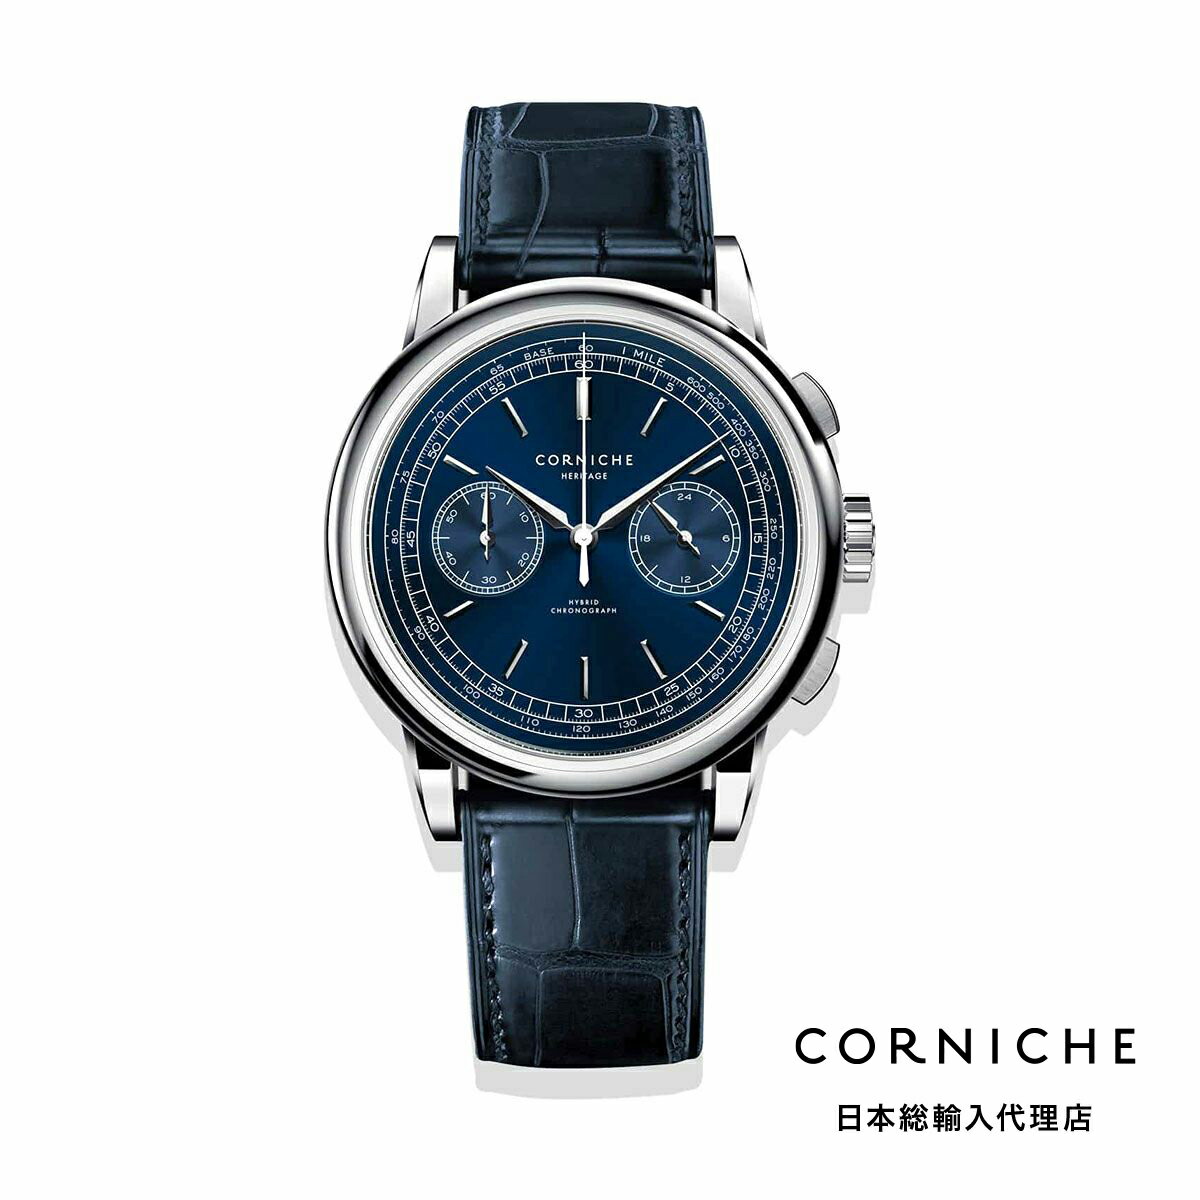 楽天H°M’S” WatchStoreコーニッシュ CORNICHE ヘリテージ クロノグラフ ブルー ネイビー レザーベルト 腕時計 メンズ